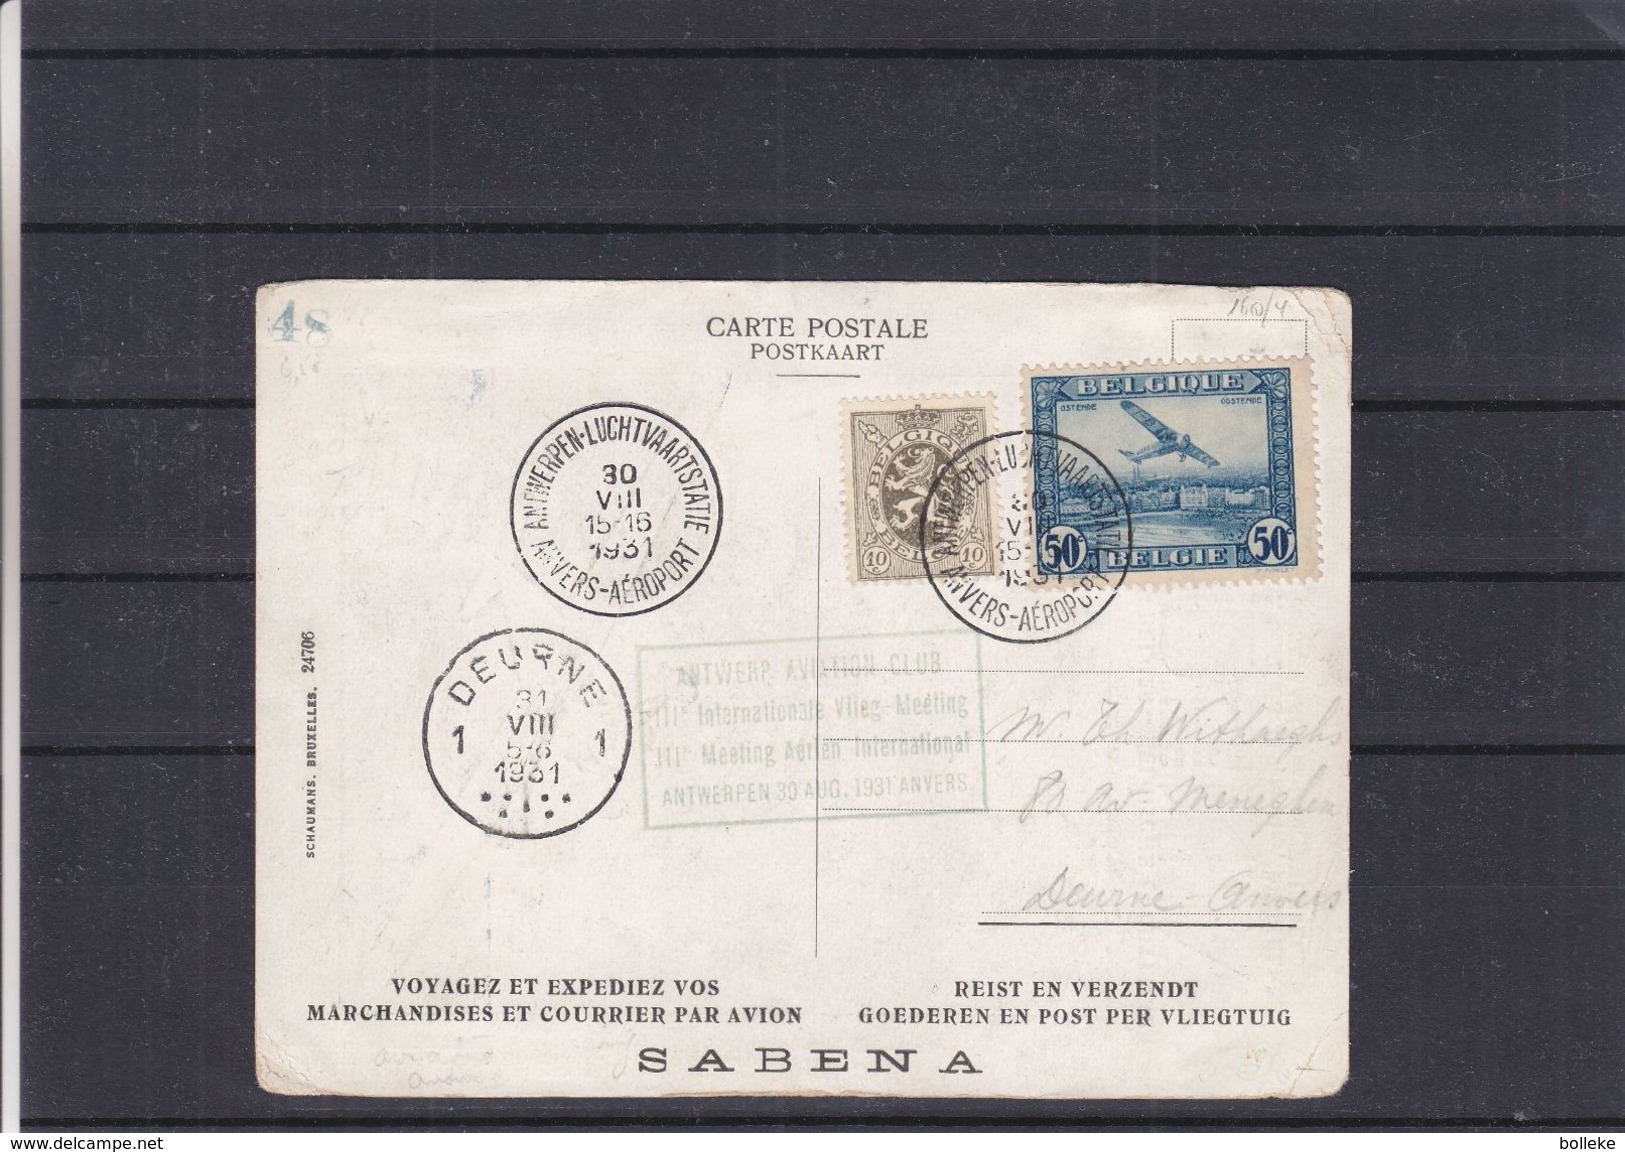 Belgique - Carte Postale De 1931 - Oblit Anvers Aéroport - Meating International - Cachet De Deurne - Carte SABENA - Covers & Documents